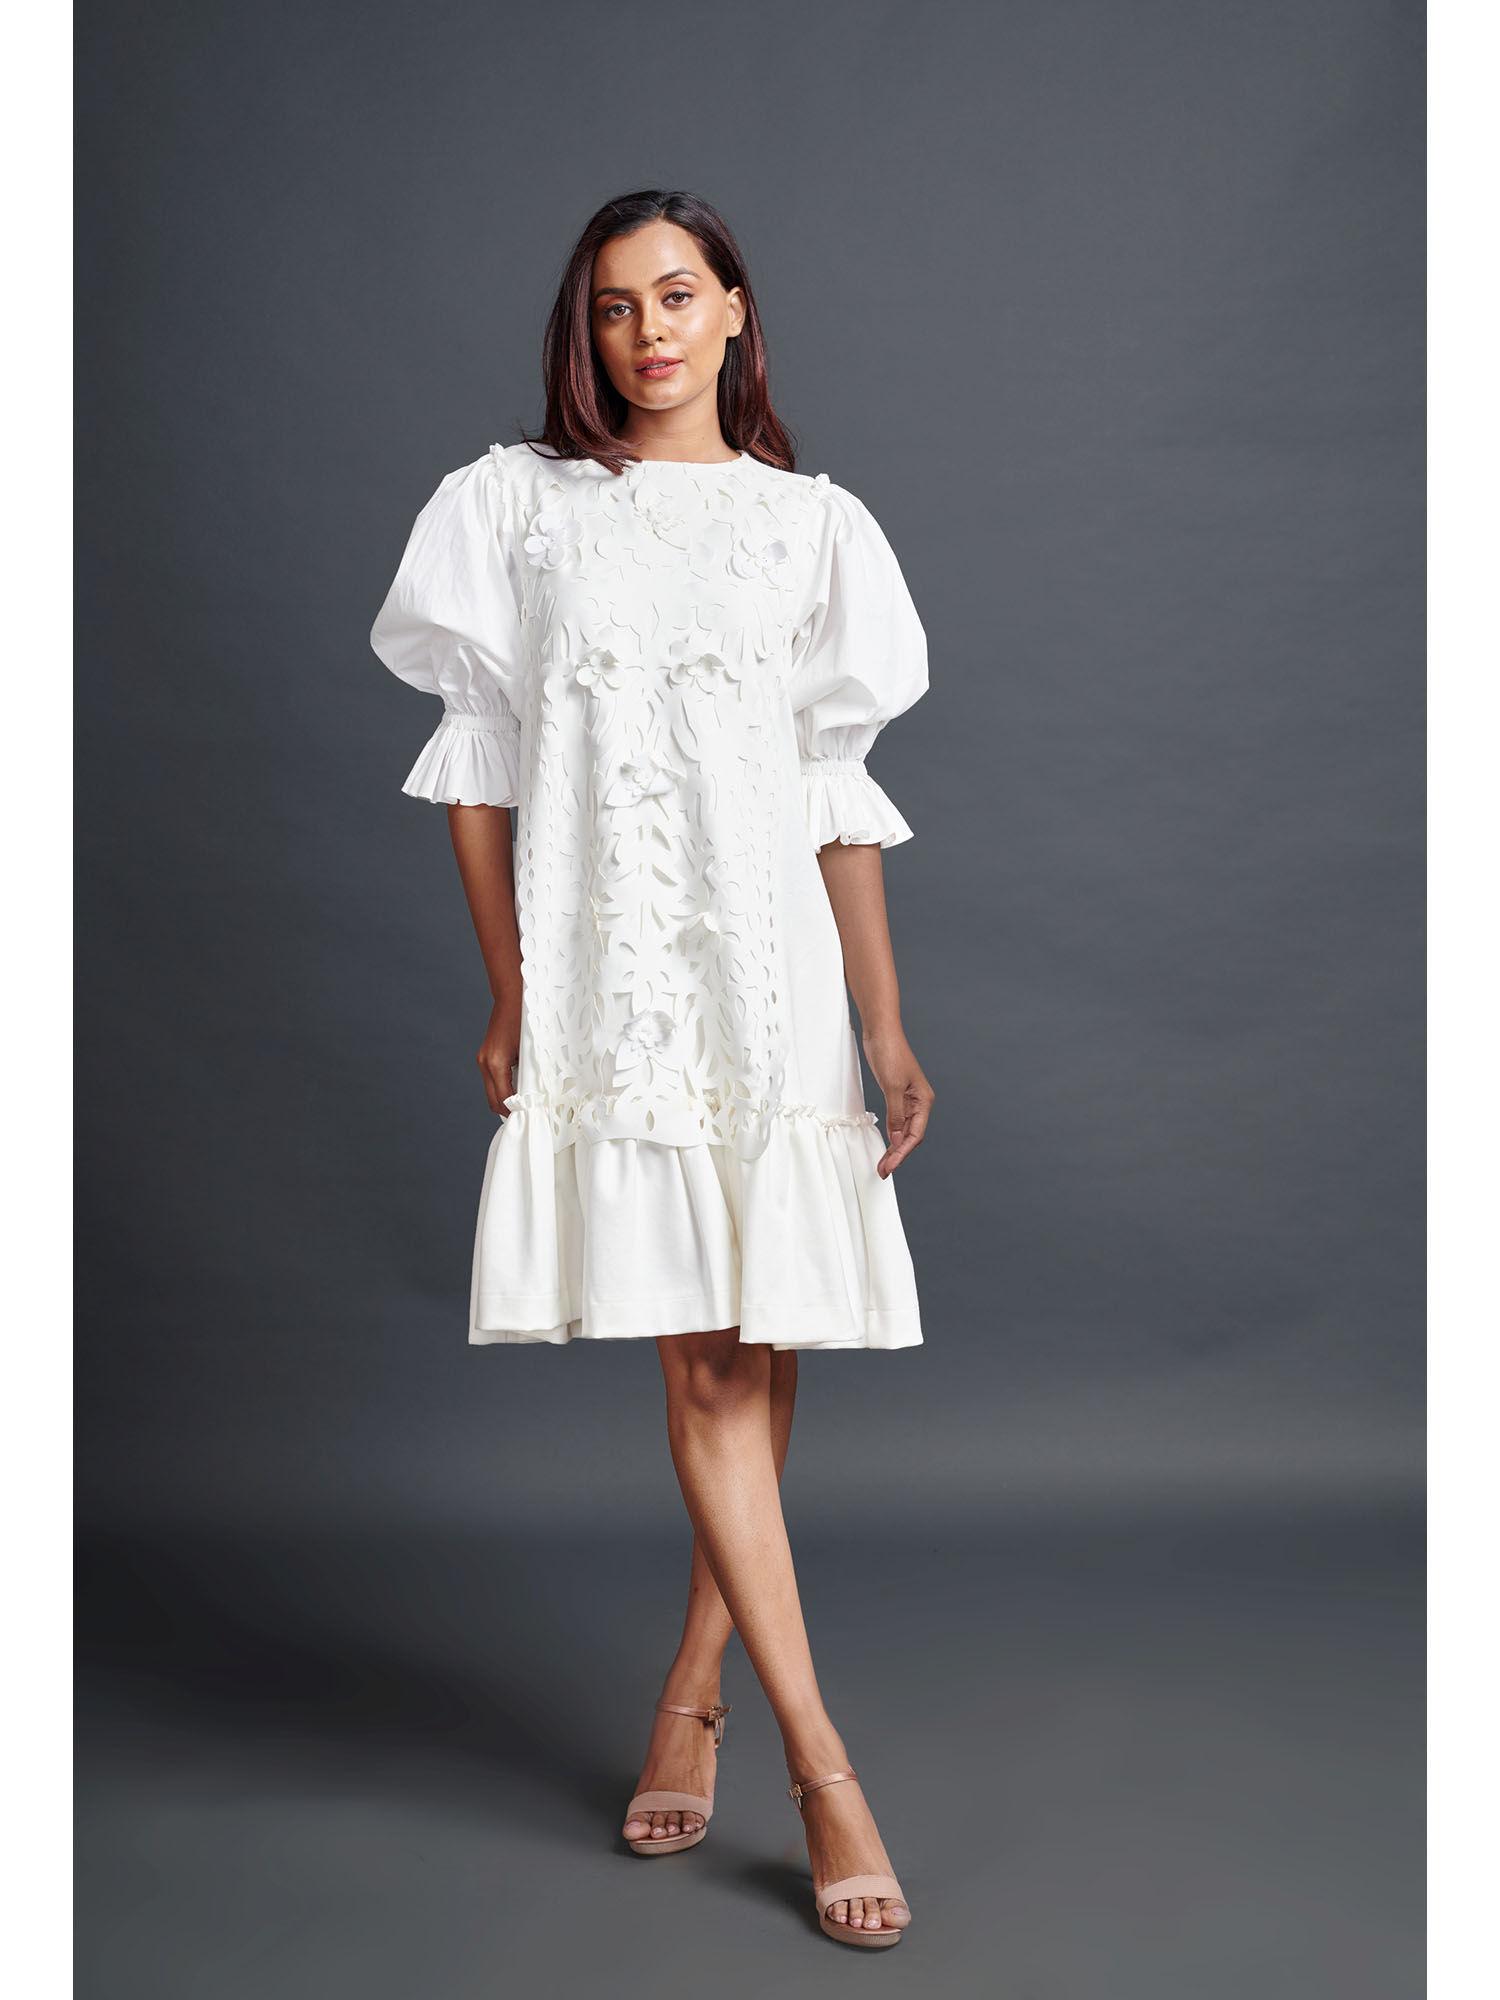 white paneled dress